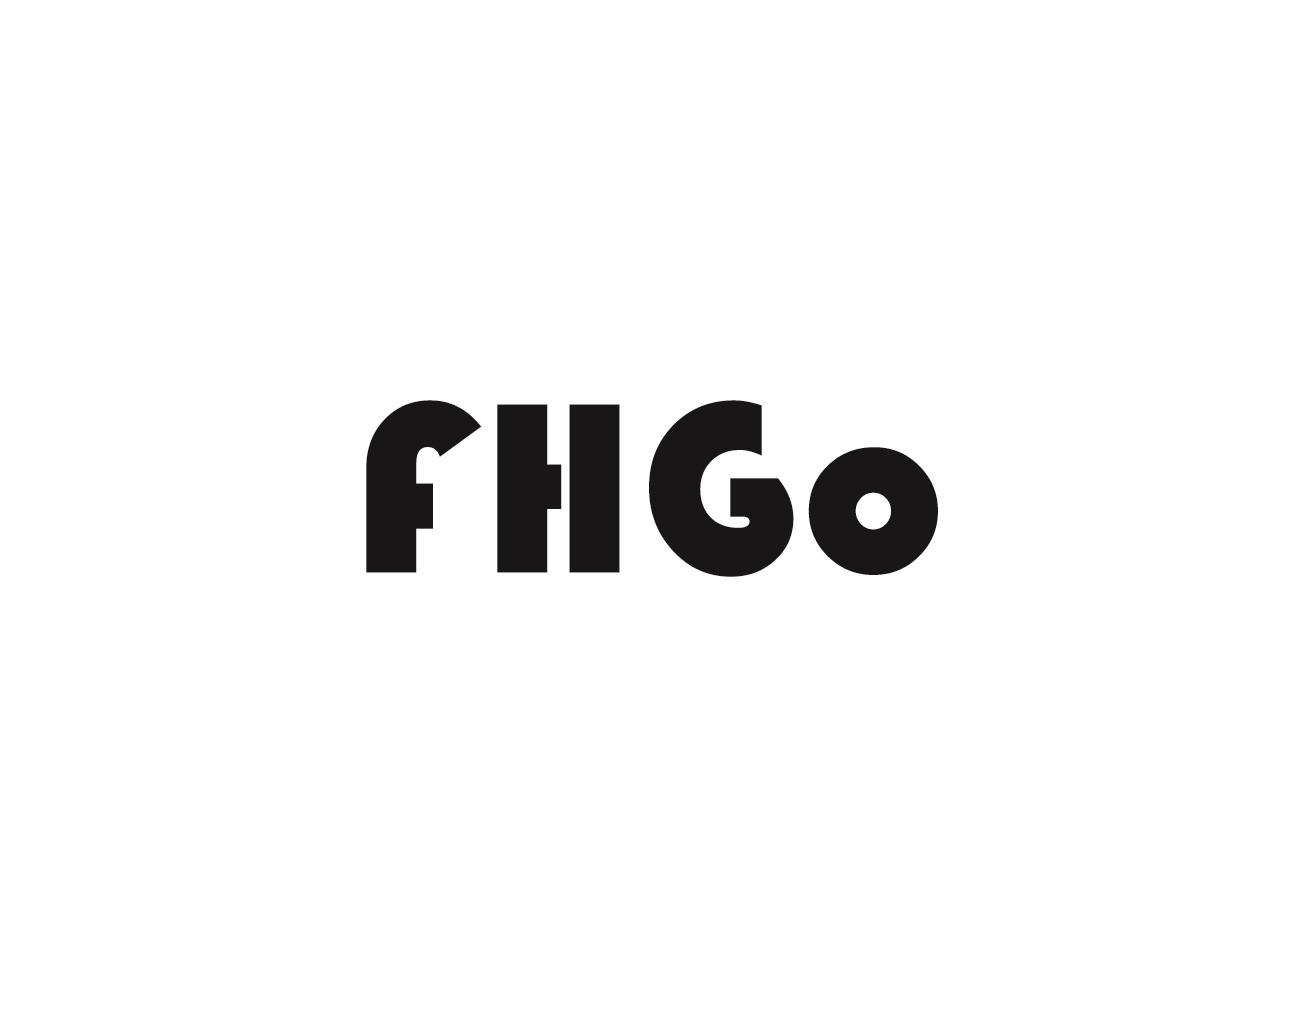 FHGO商标转让